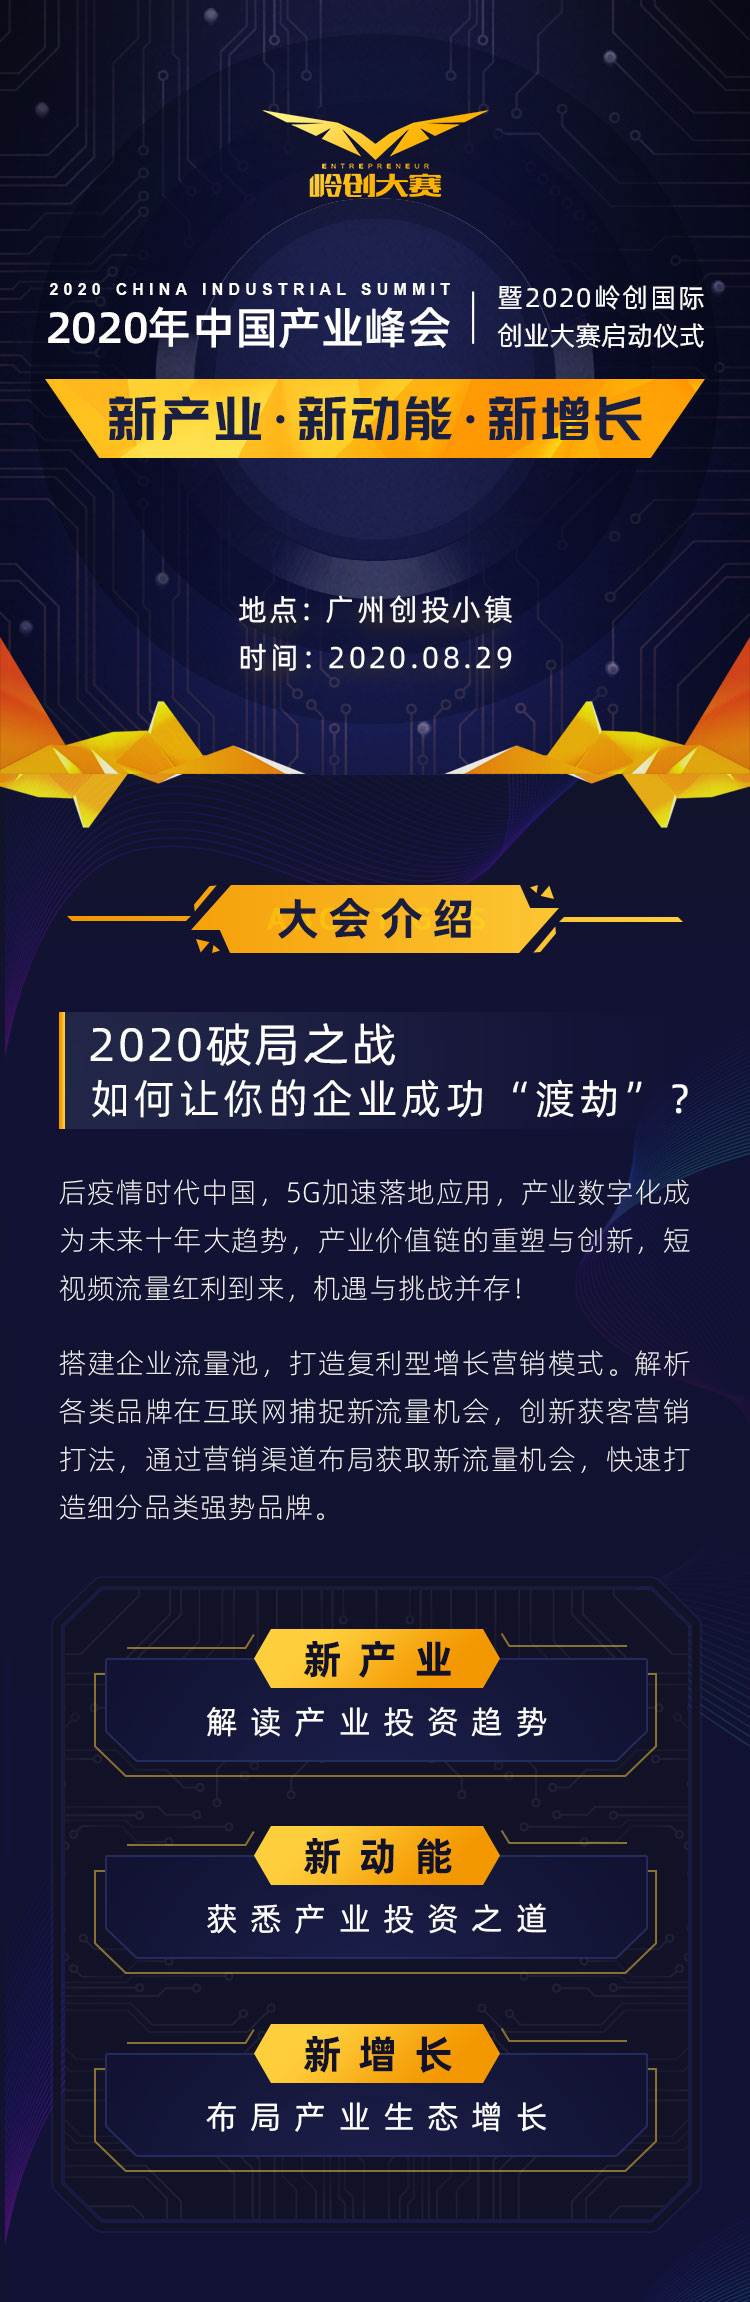 2020中国产业峰会_售票详情v2.1_01.jpg